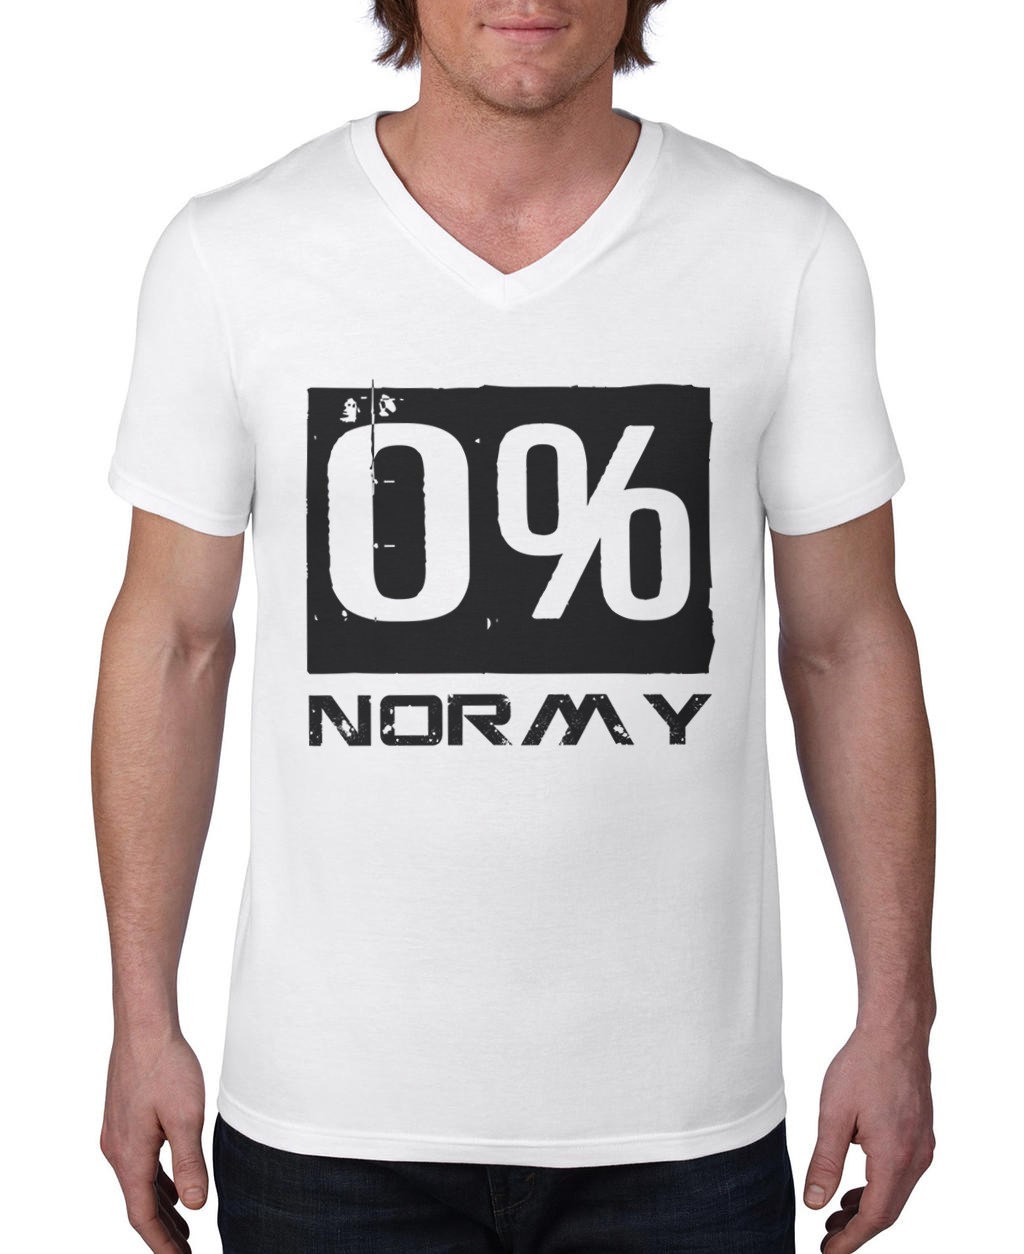 Tshirt 0%Normy V-Neck